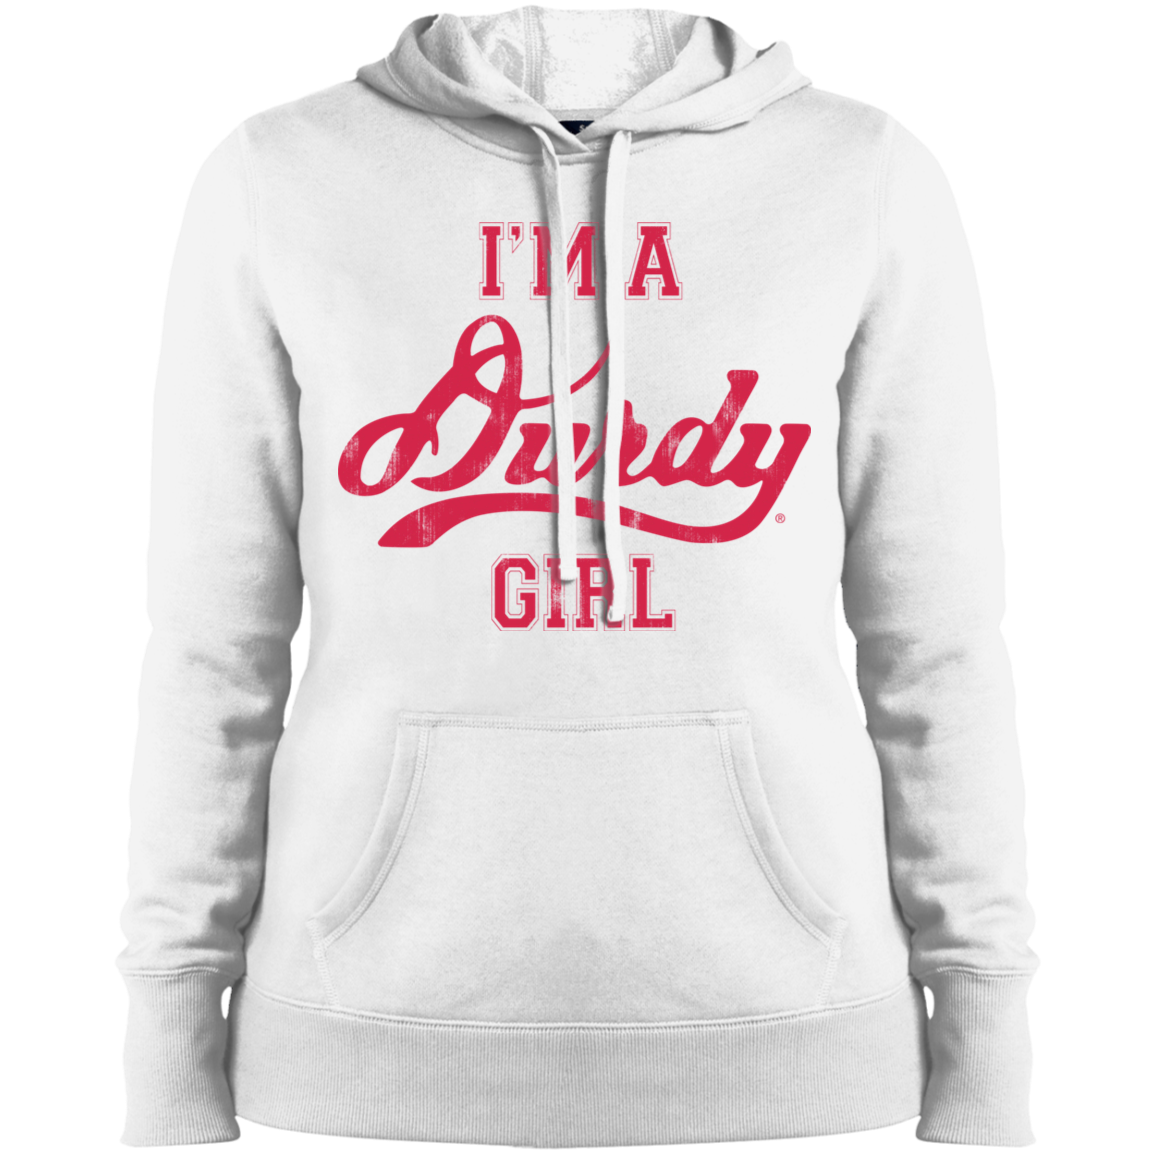 Durdy Girl Sport-Tek Ladies' Pullover Hooded Sweatshirt